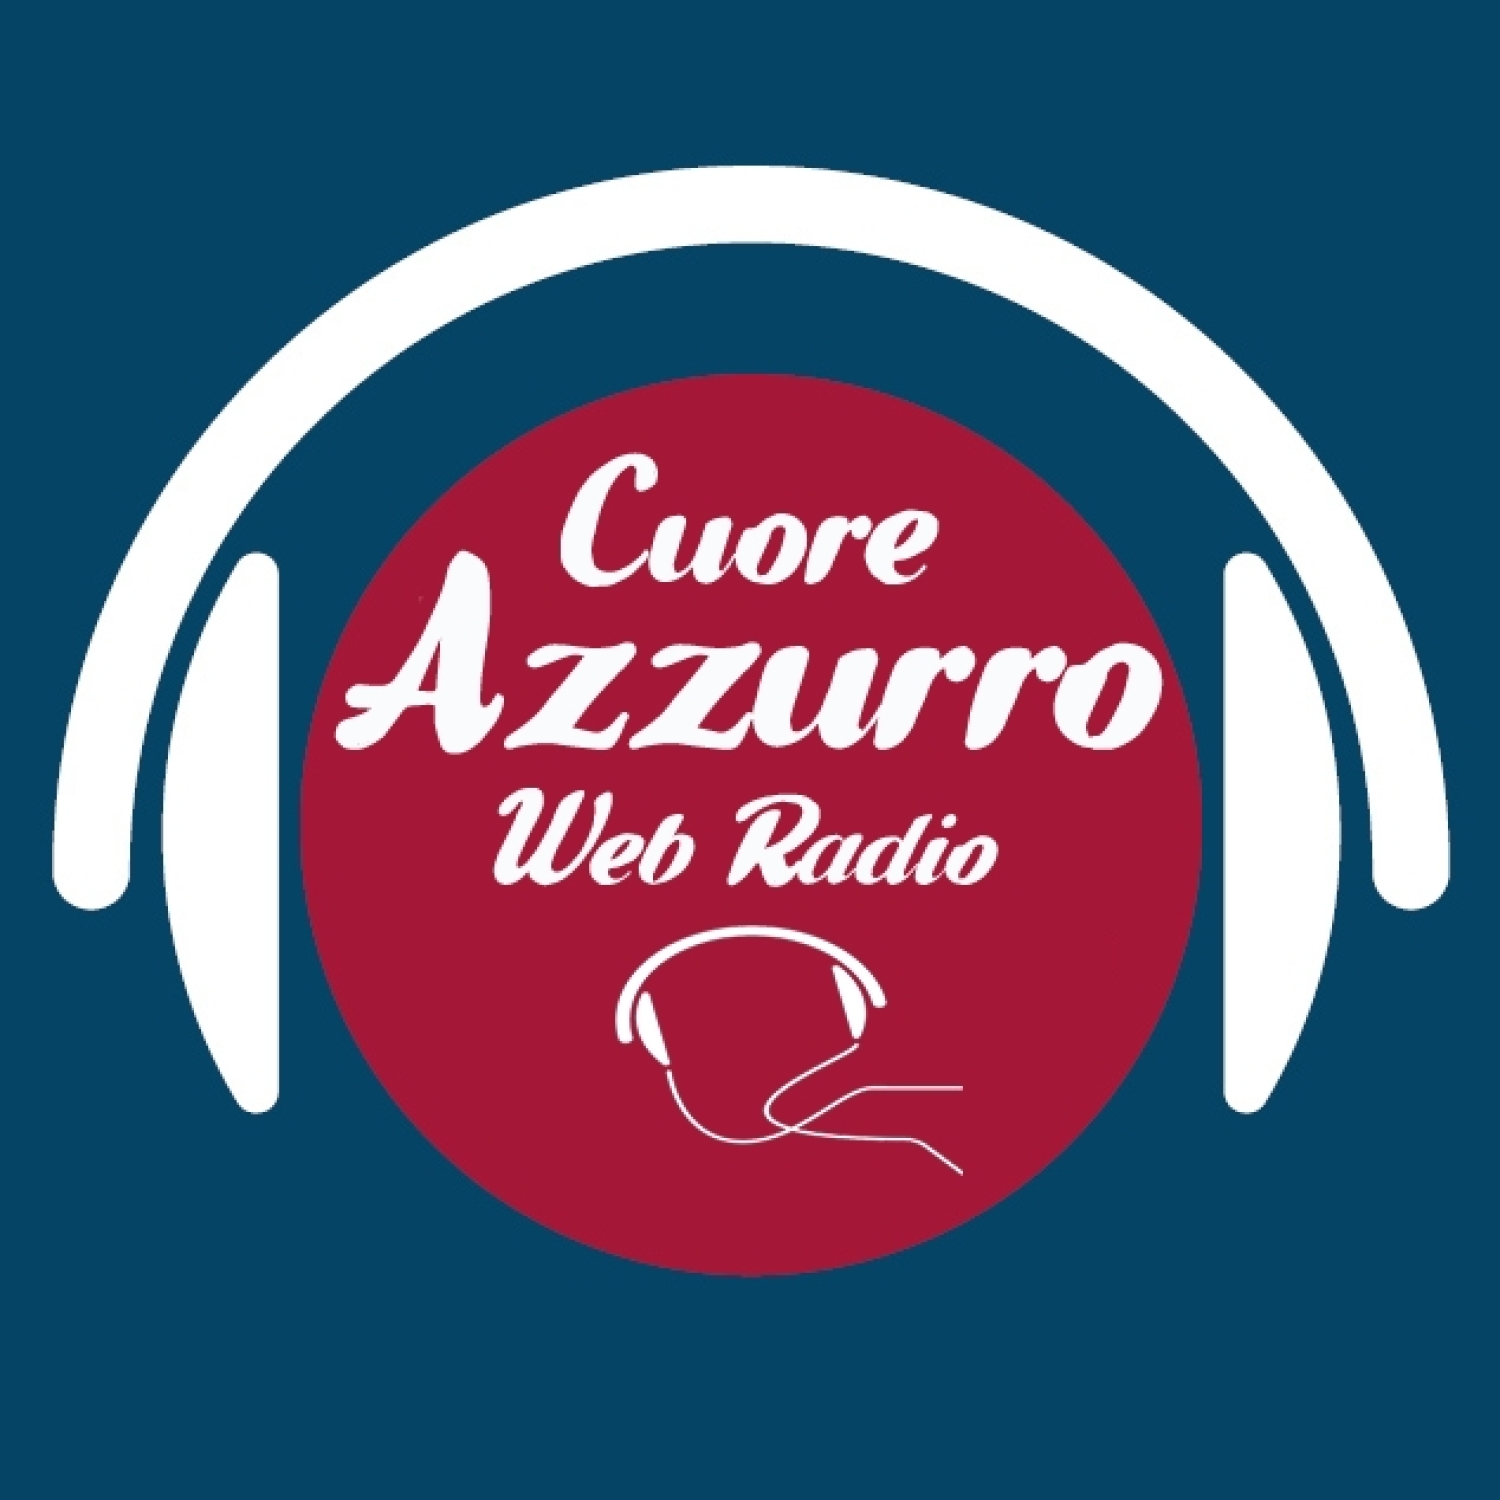 Radio "Cuore Azzurro" 05.10.2017